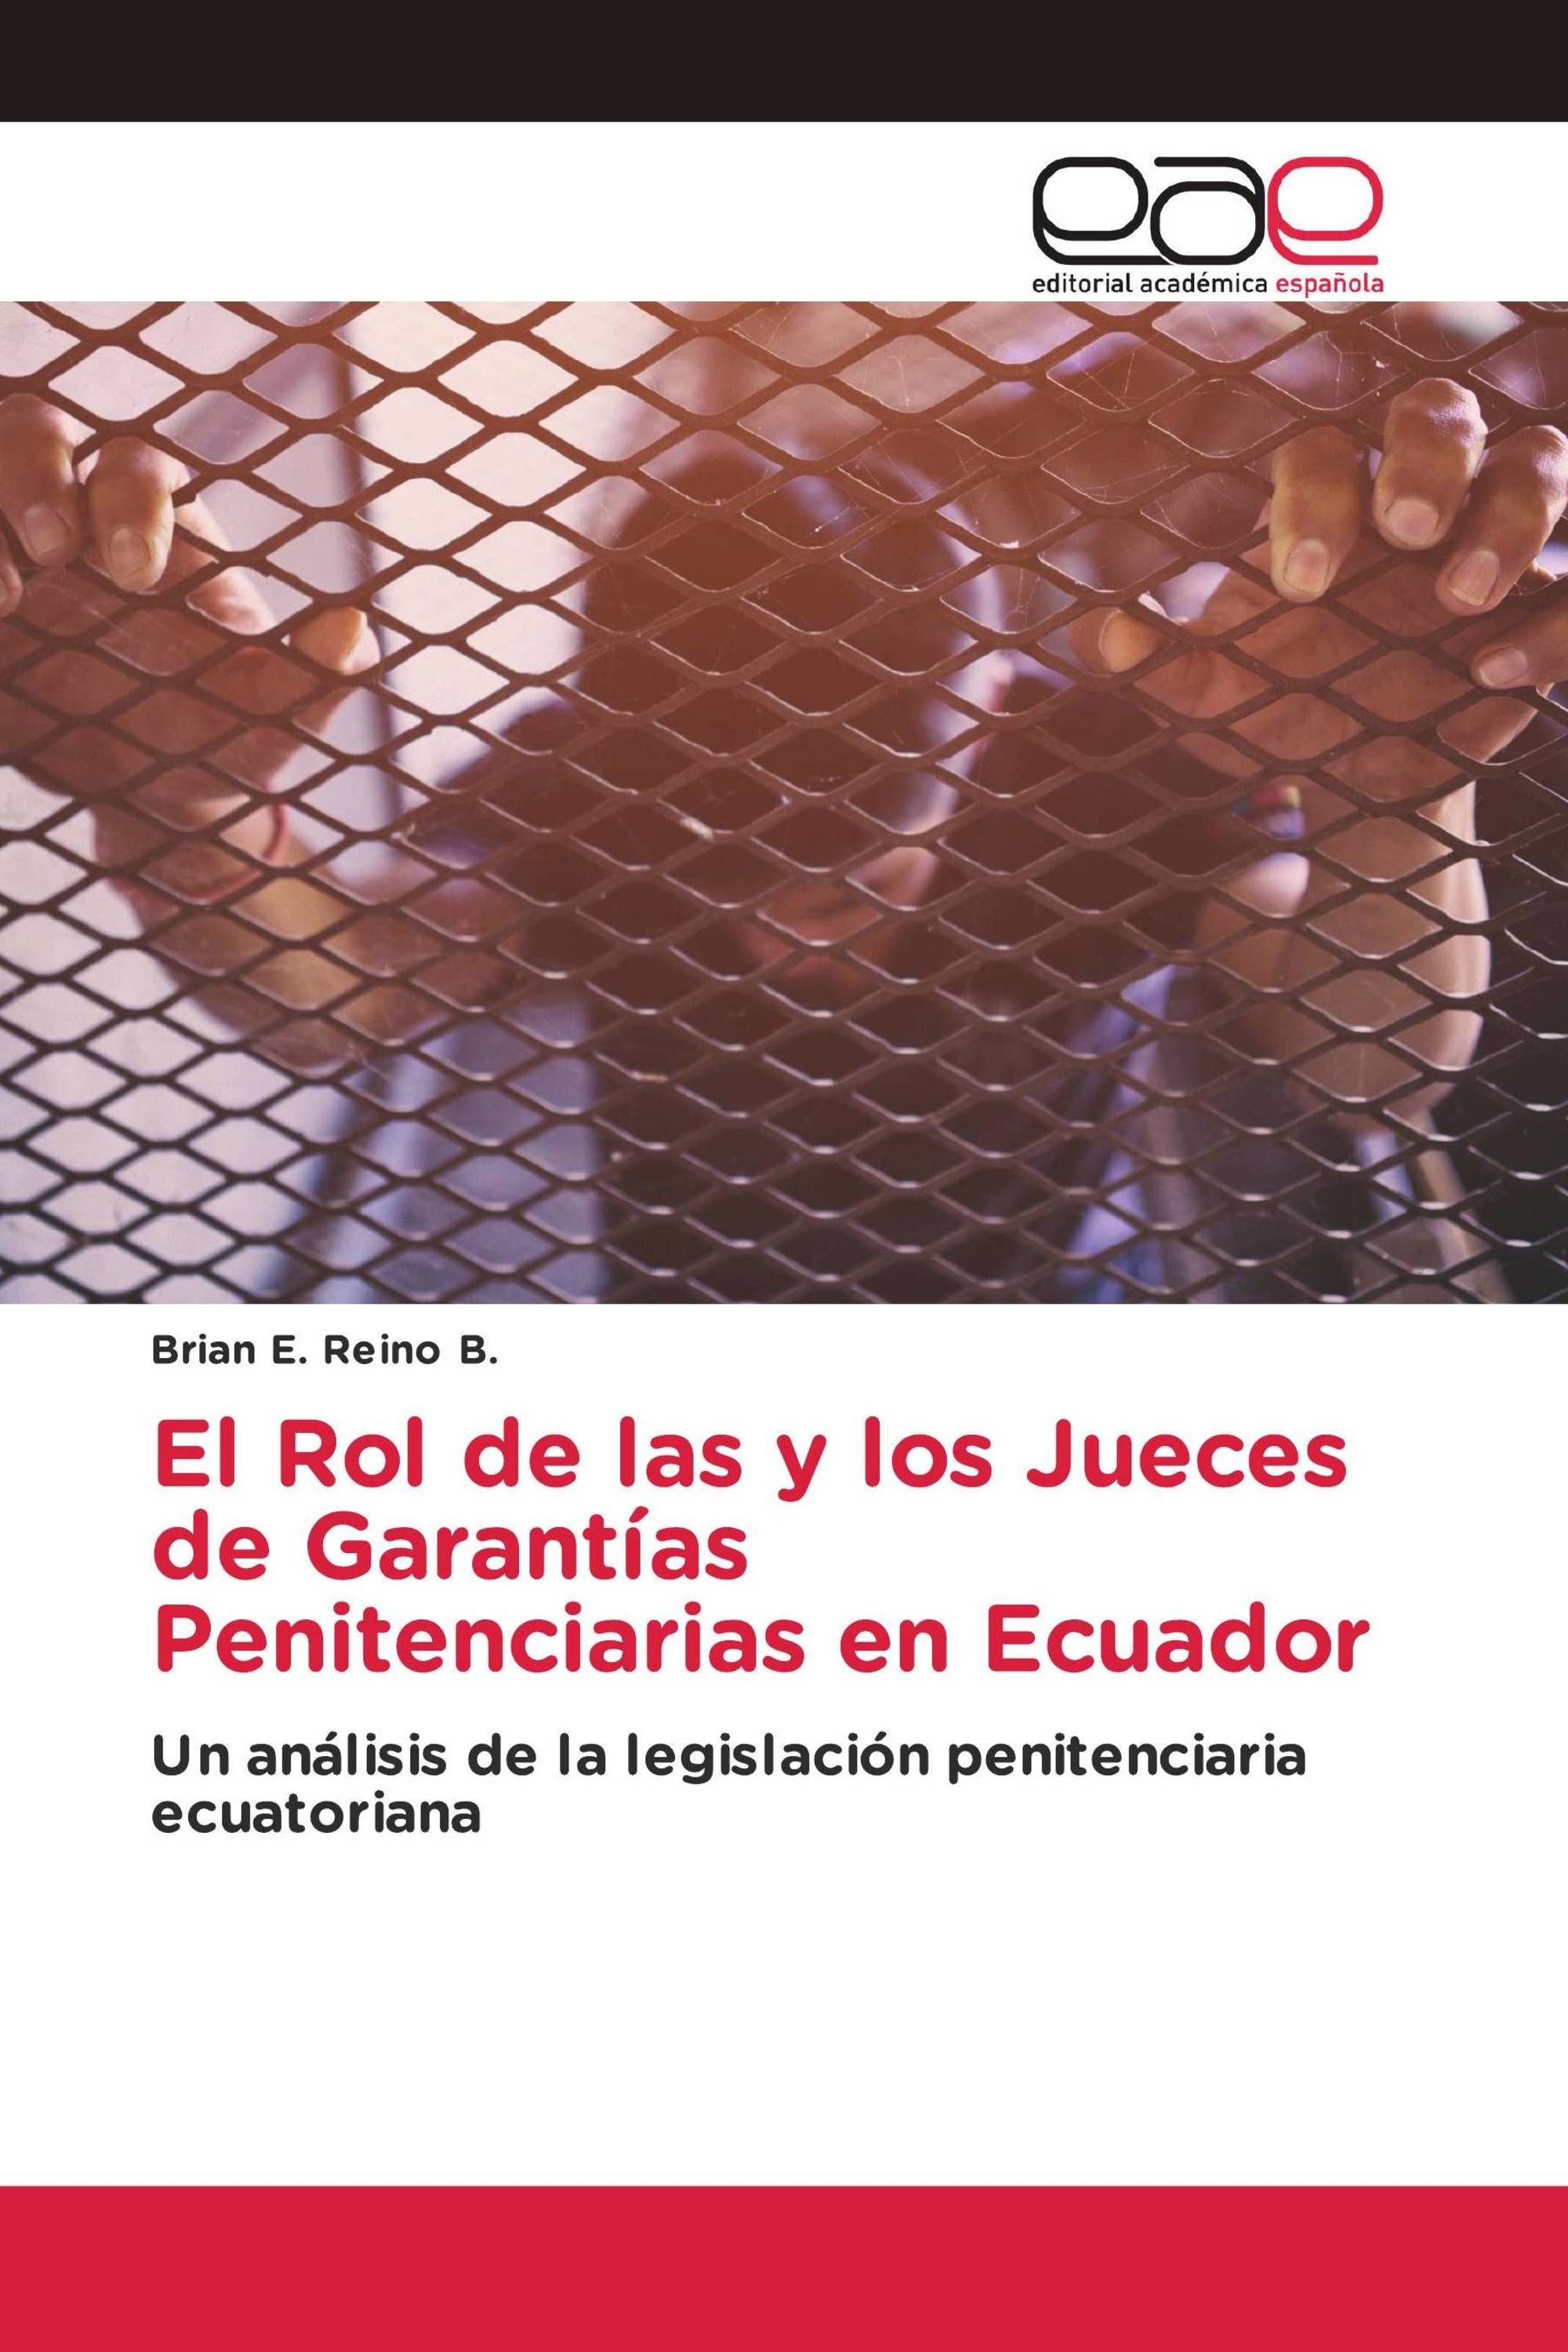 El Rol de las y los Jueces de Garantías Penitenciarias en Ecuador